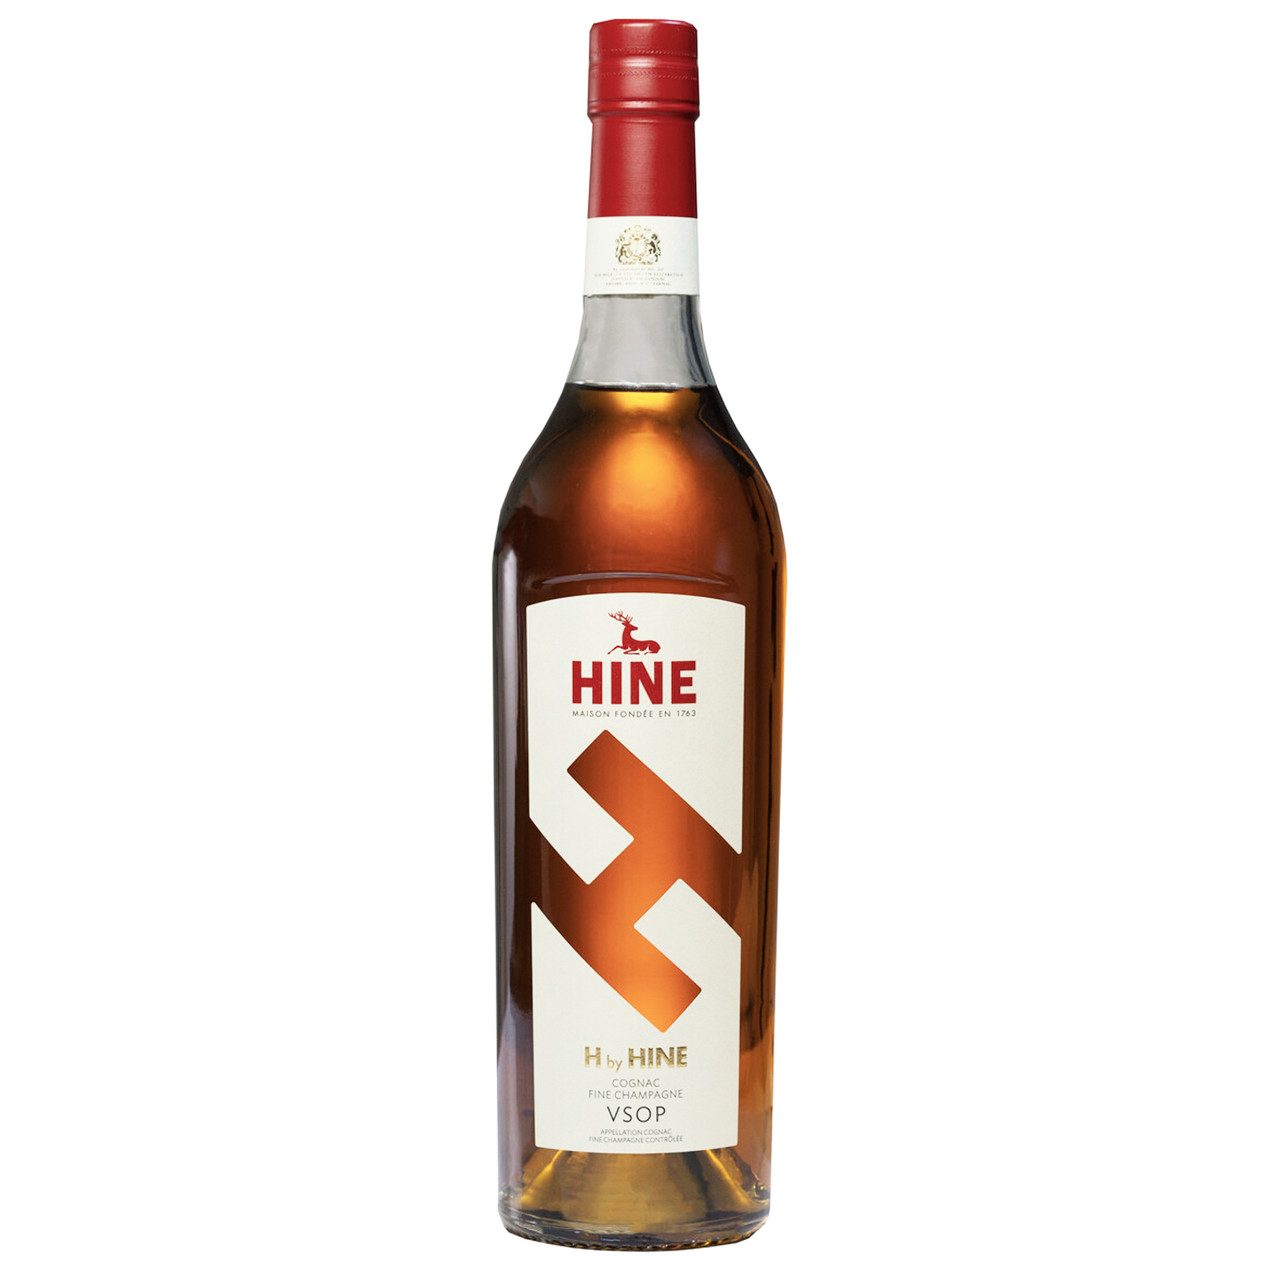 H by Hine VSOP Cognac 750mL